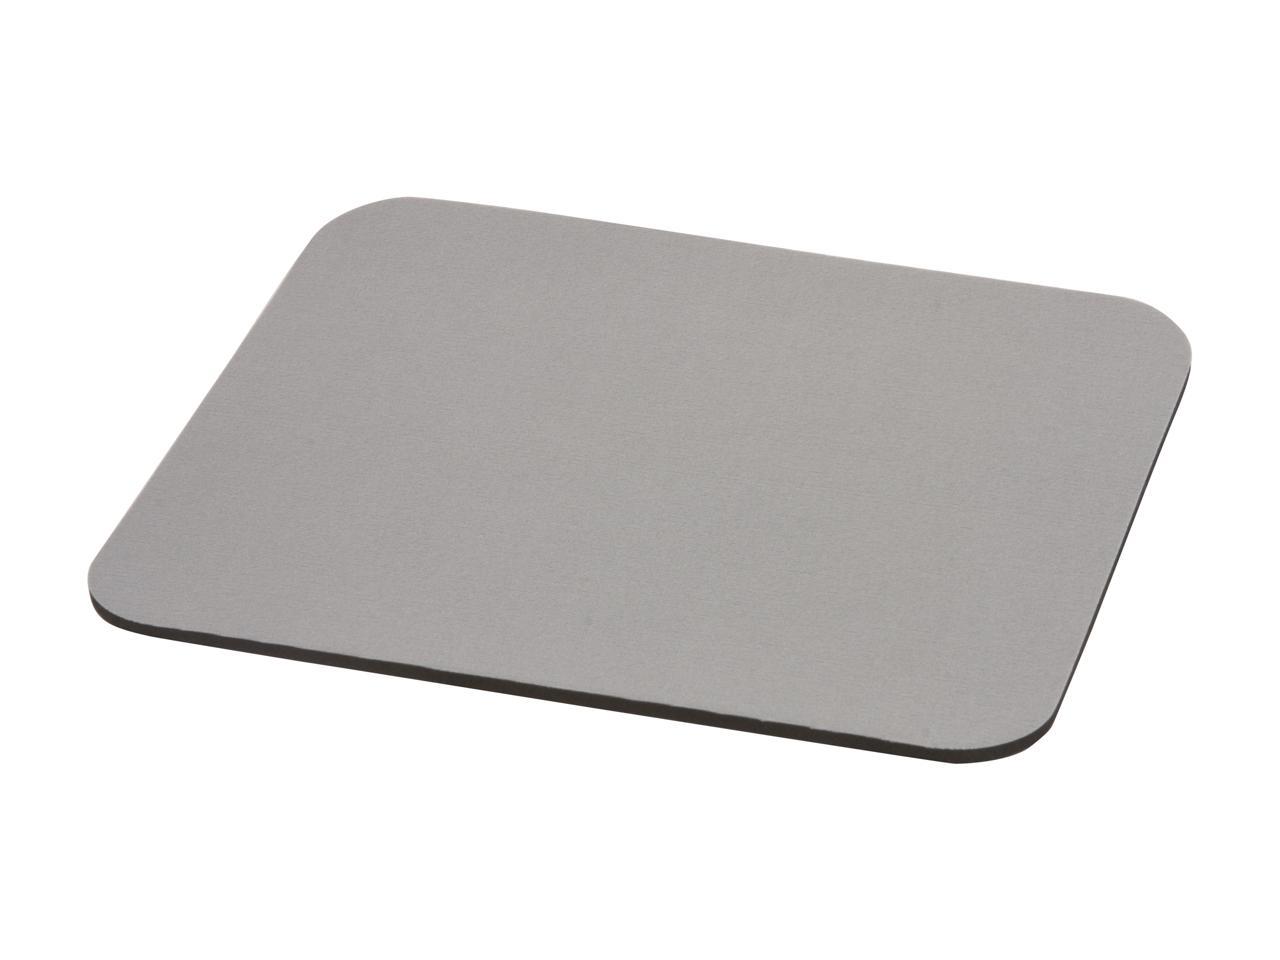 Belkin F8E081 Standard Mouse Pad, Grey